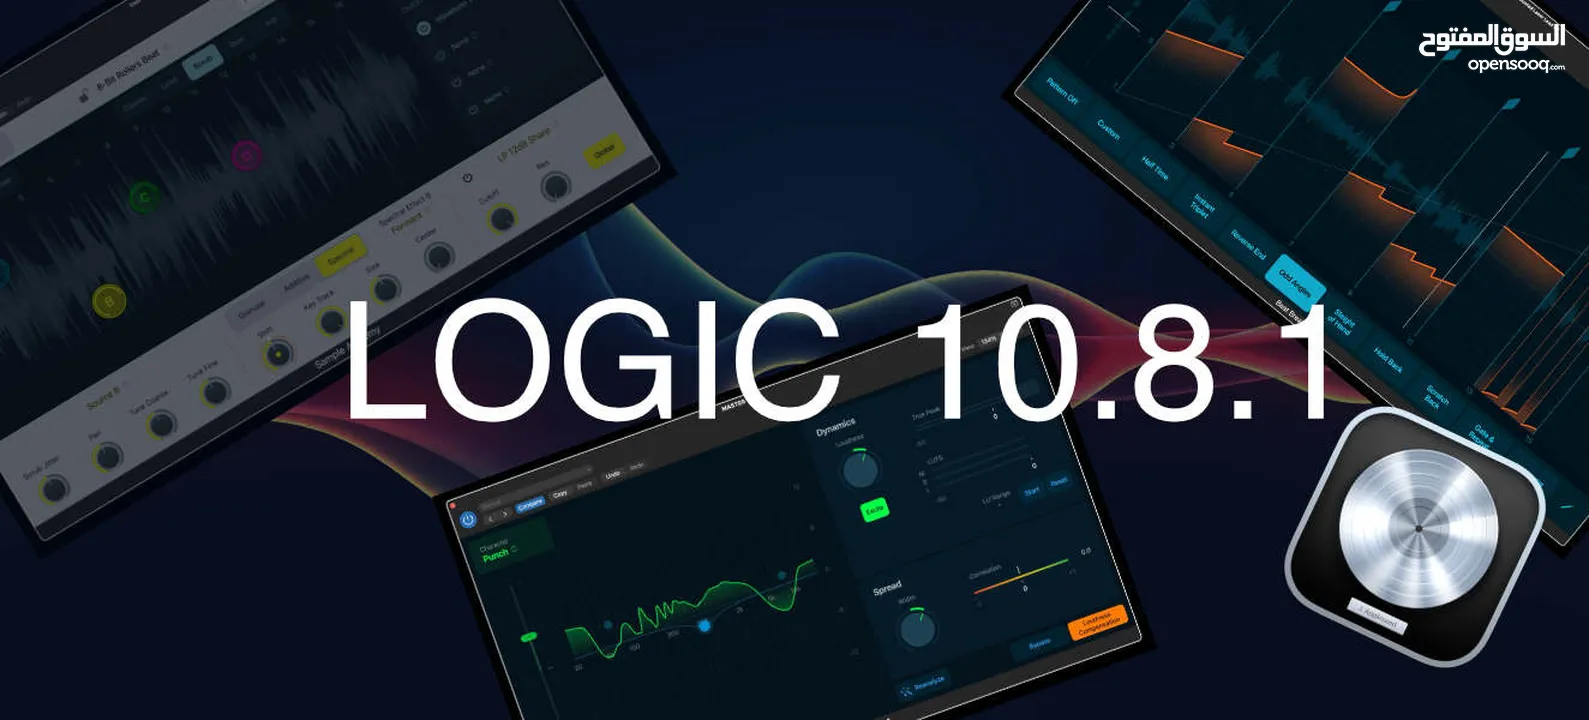 Logic Pro 10.8.1